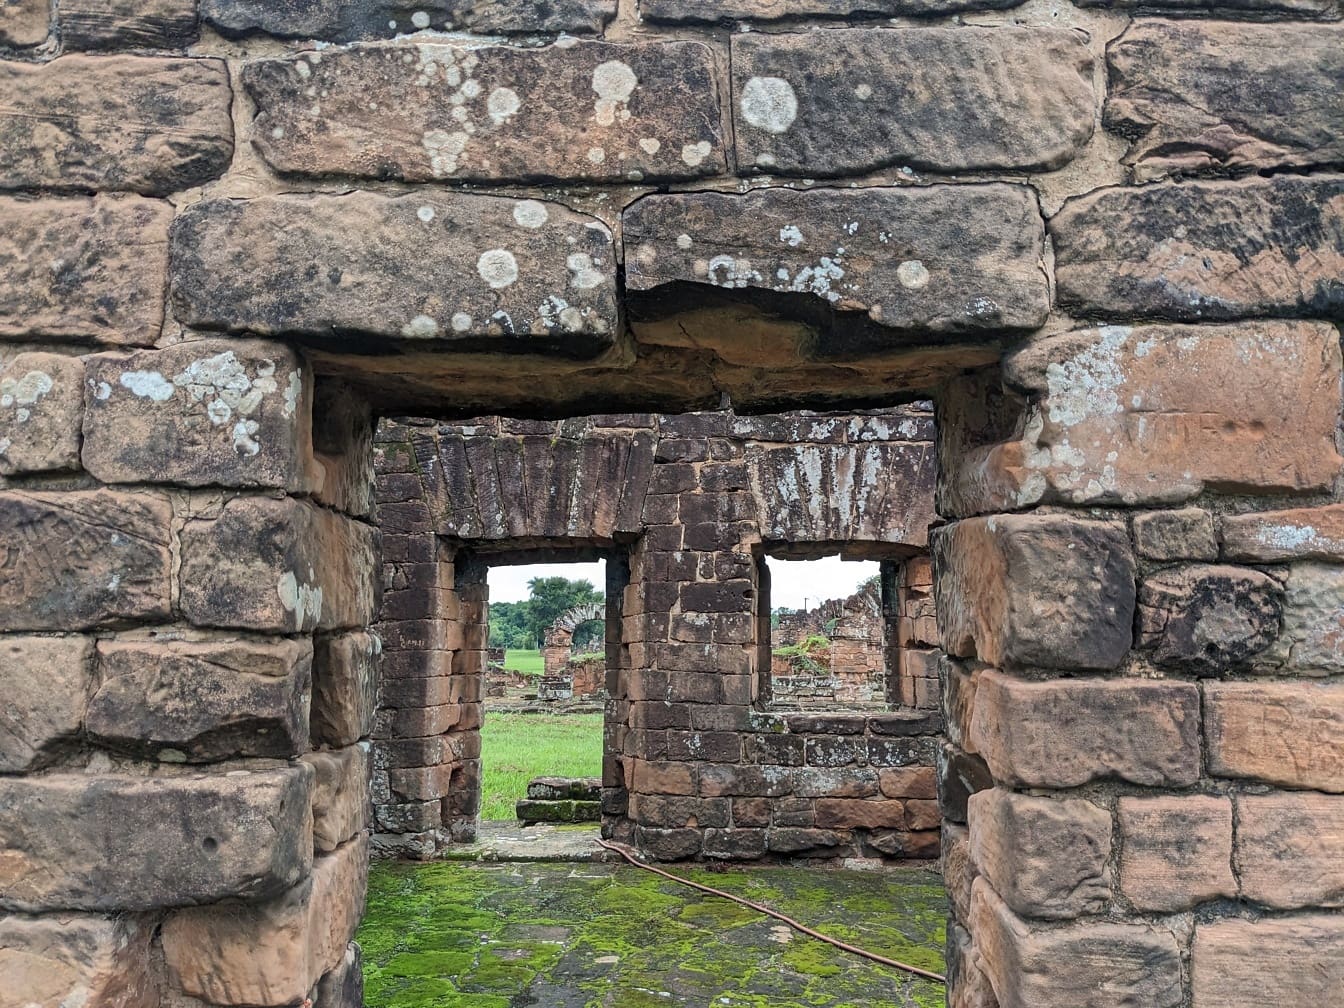 Keskiaikainen raunio, jonka oviaukko on tiiliseinällä arkeologisella alueella Paraguayssa